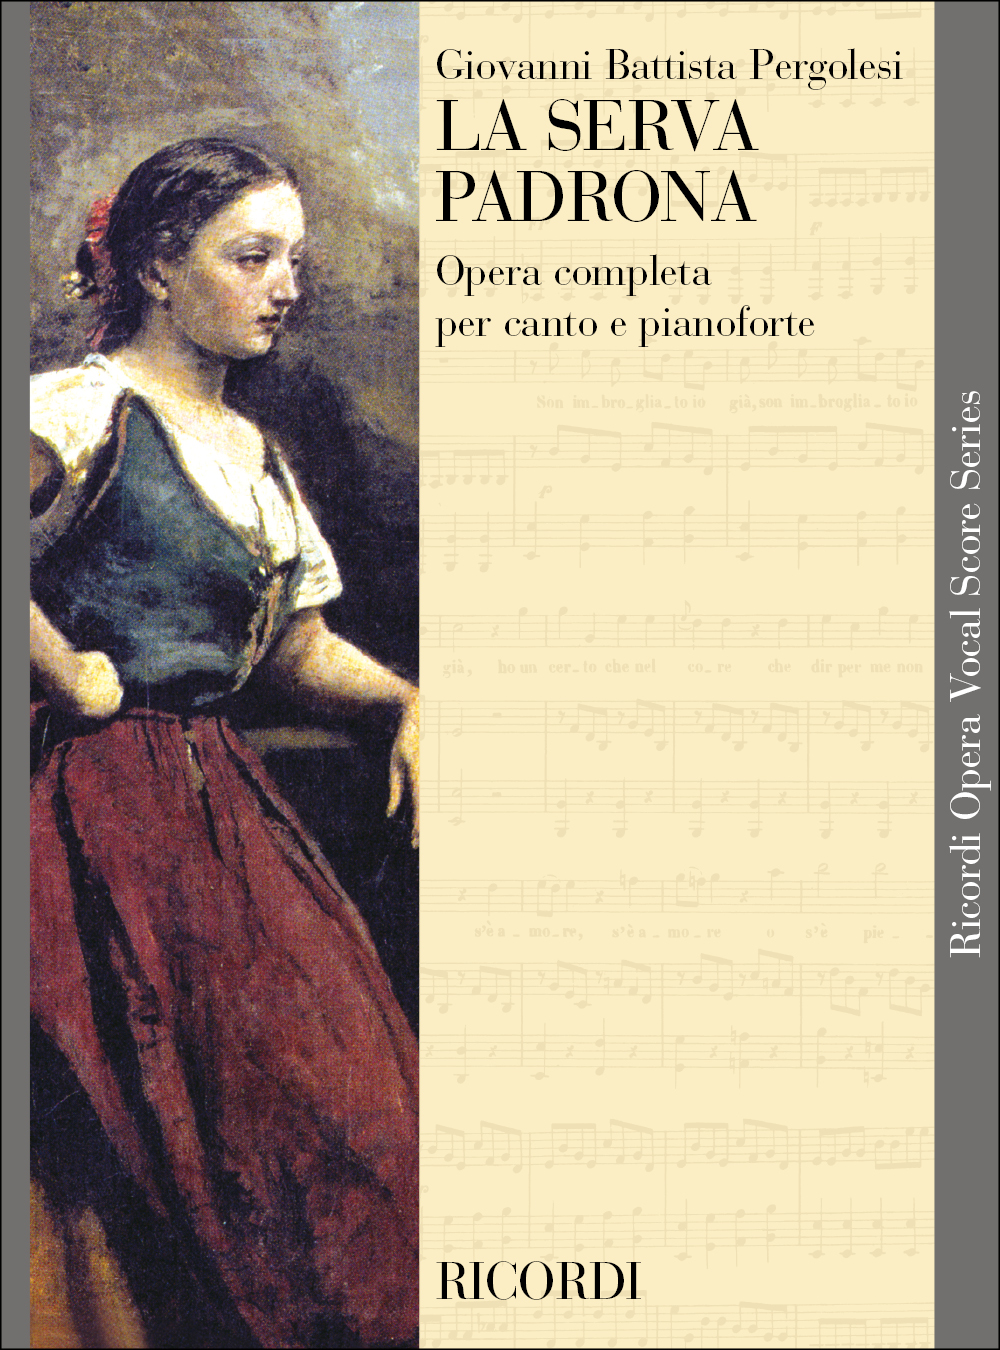 Giovanni Battista Pergolesi: La serva padrona: Opera